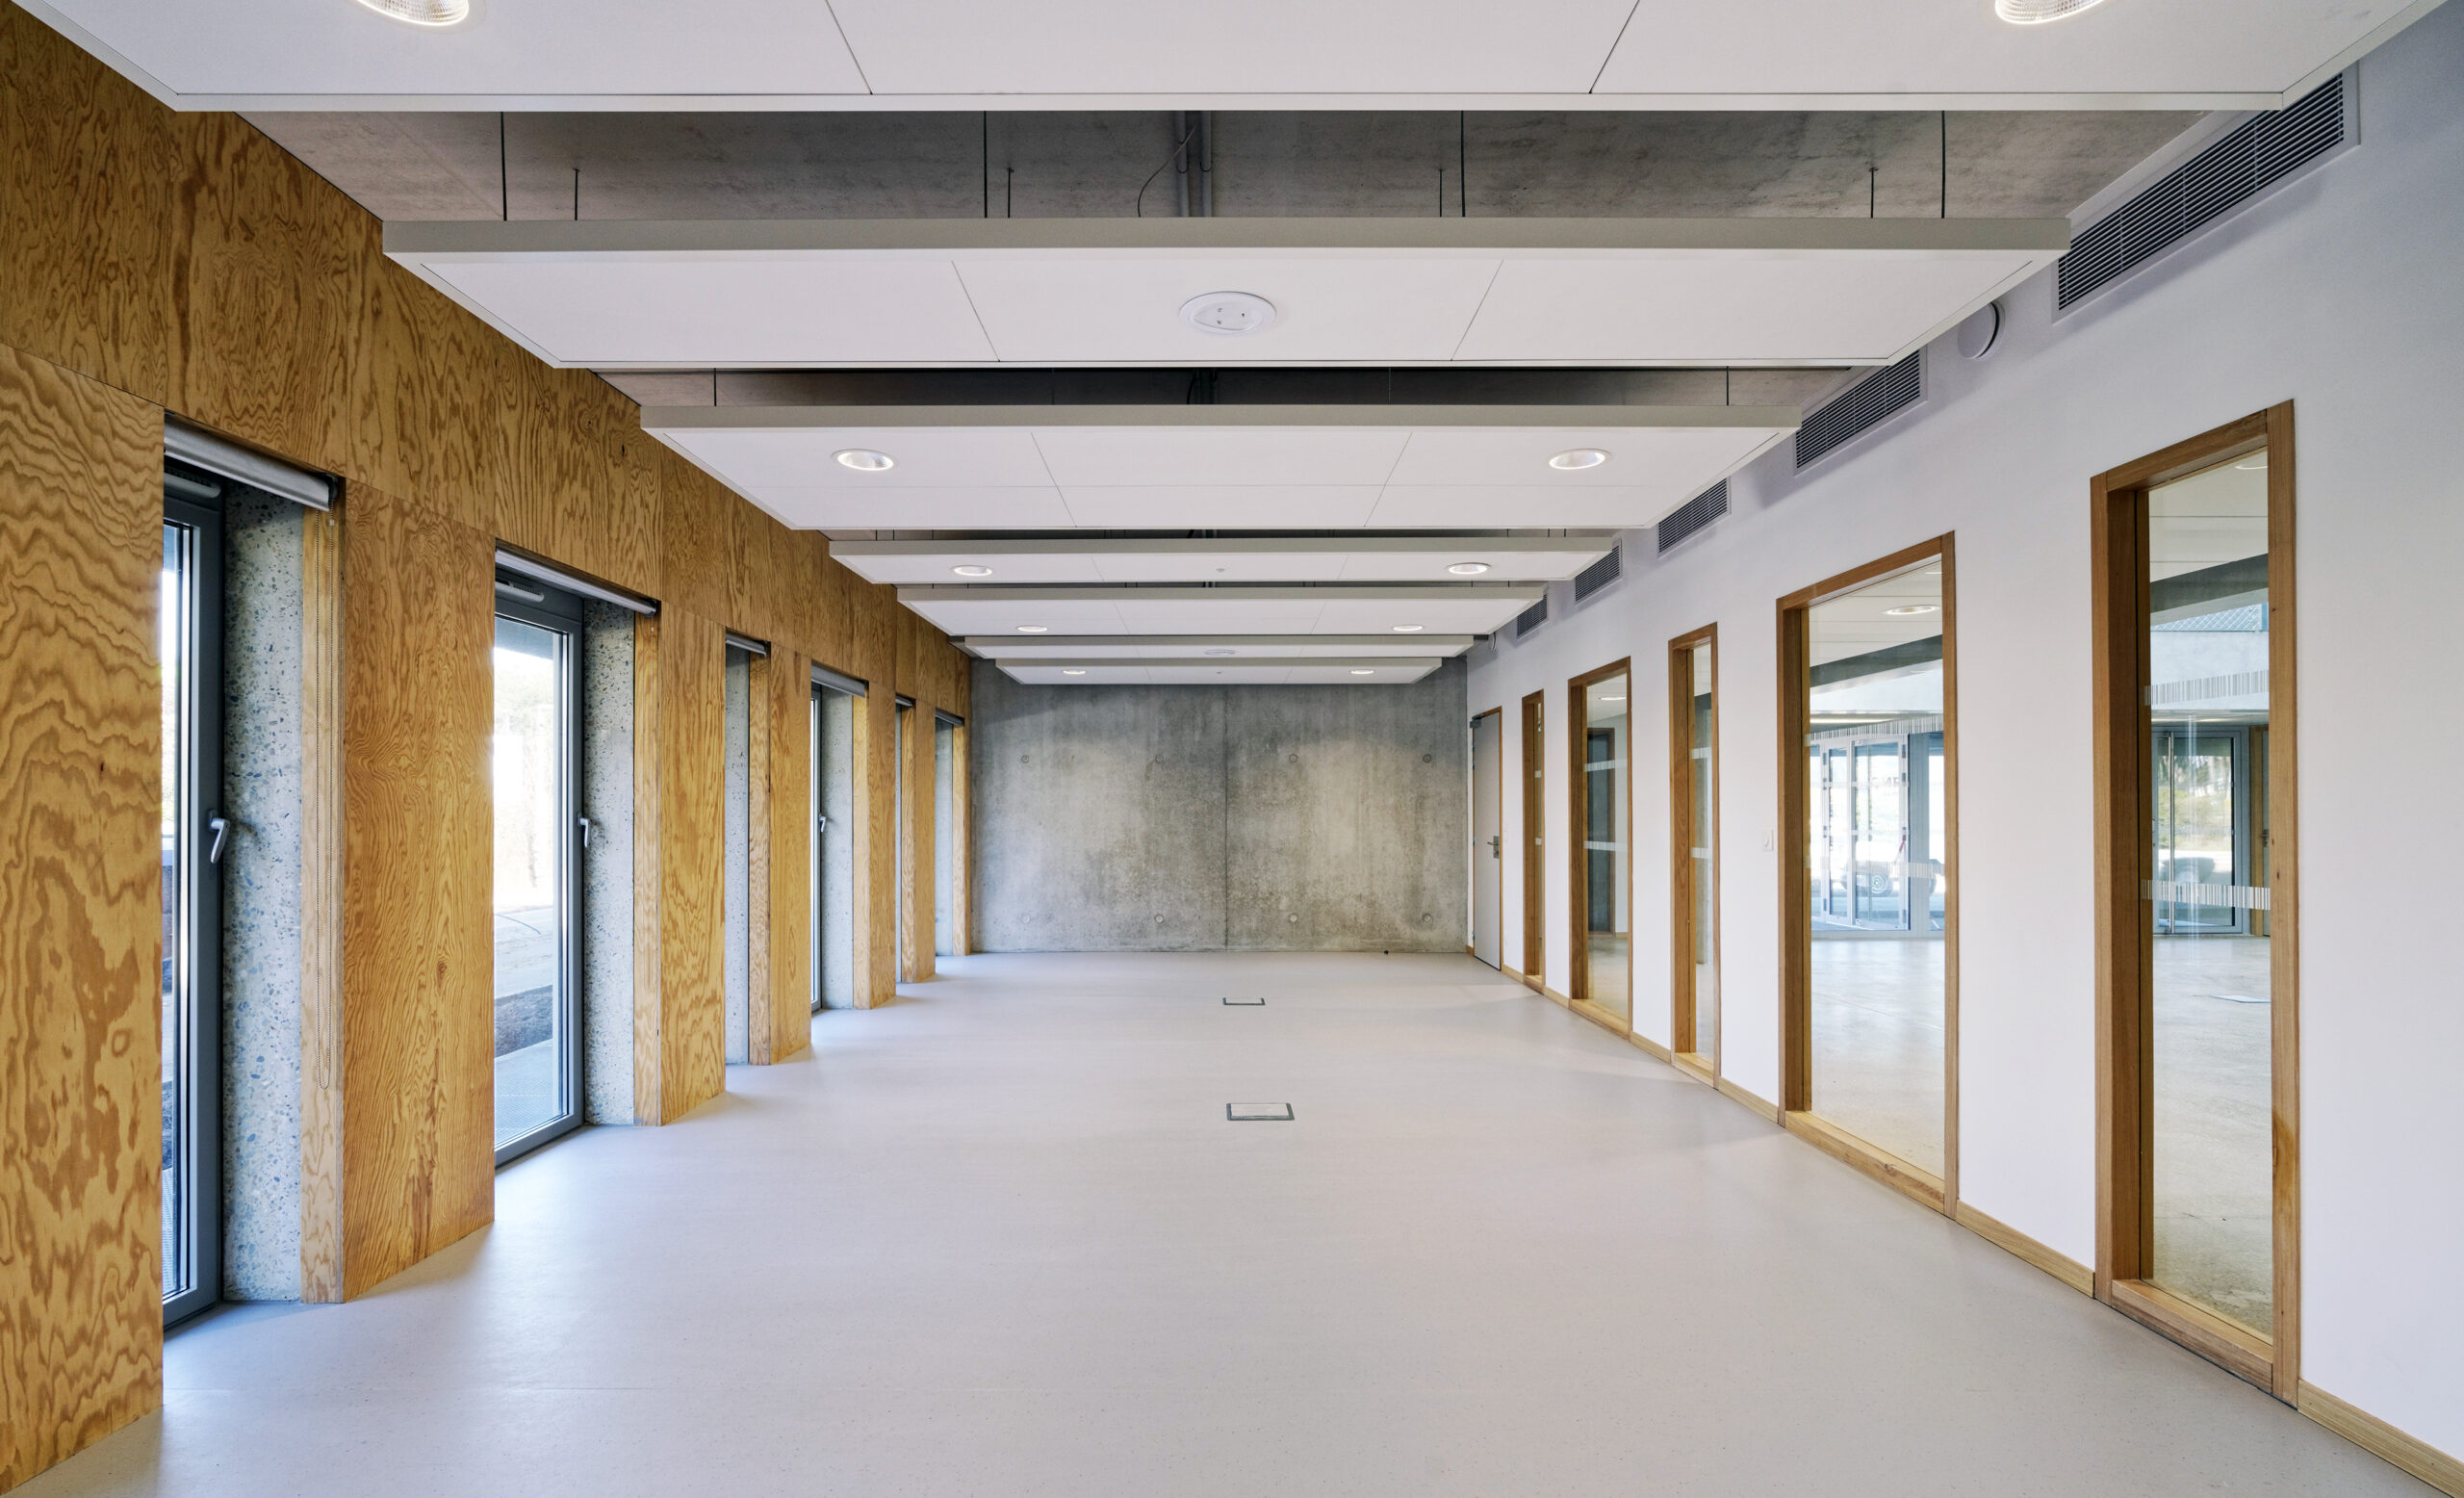 4_La lumière naturelle s’invite au cœur du bâtiment, mettant en valeur les matériaux utilisés / Vincent Monthiers